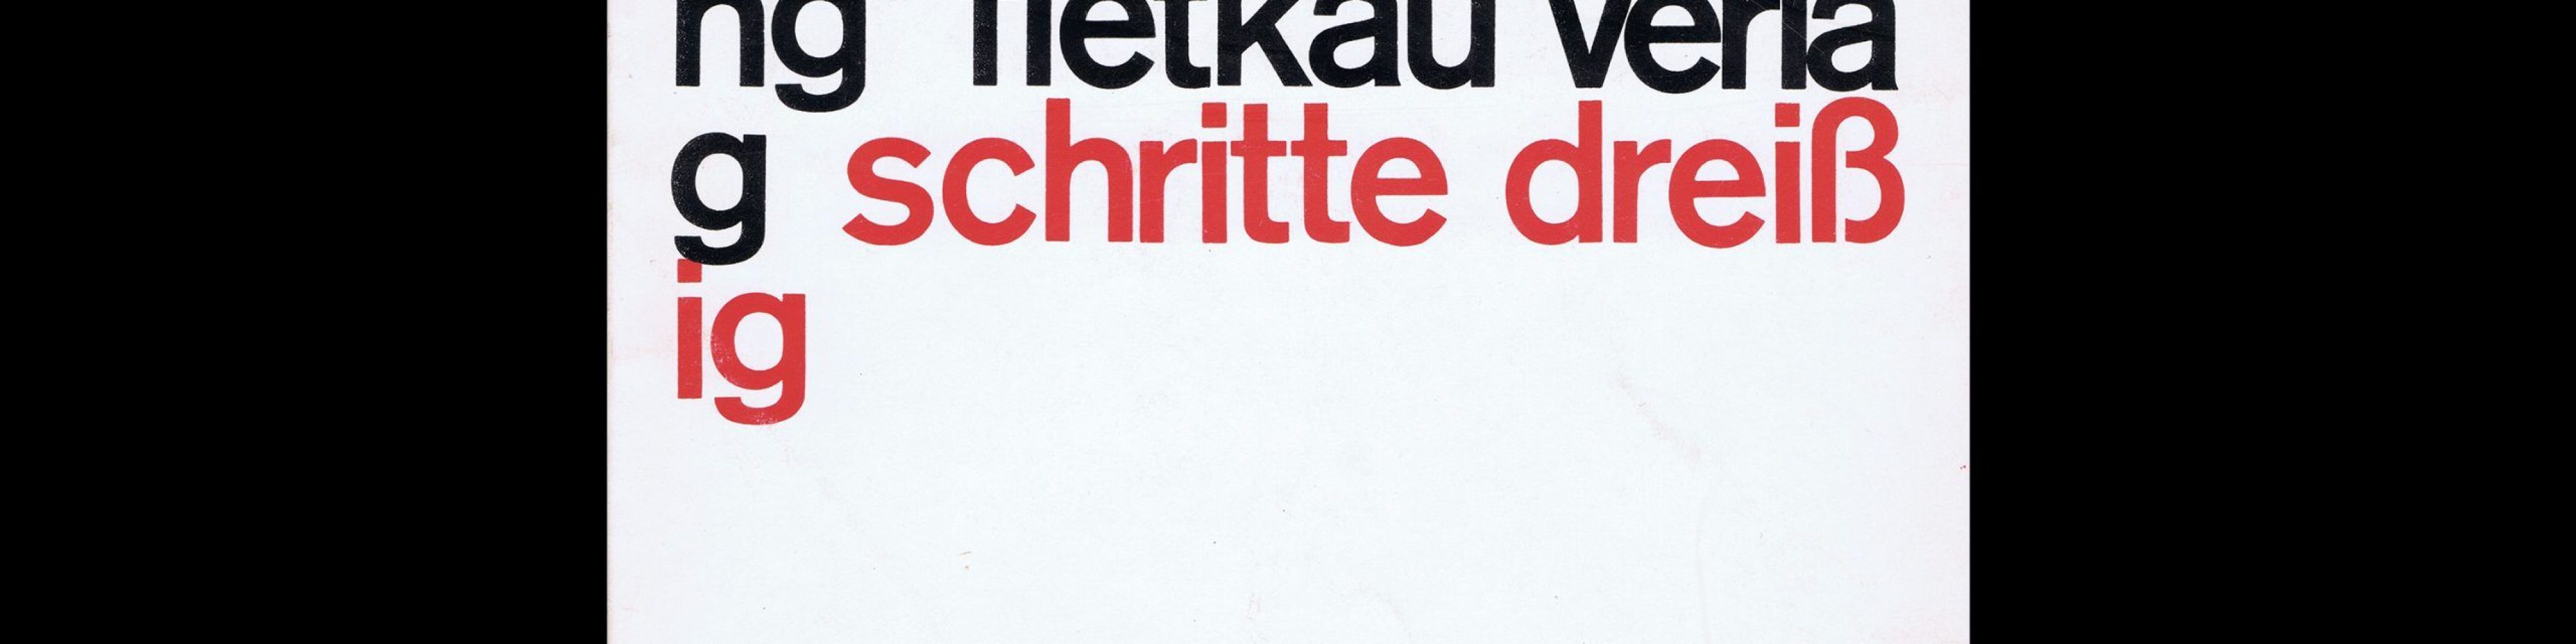 Ute Erb, Ein schöner Land, Wolfgang Fietkau Verlag, 1976. Designed by Christian Chruxin